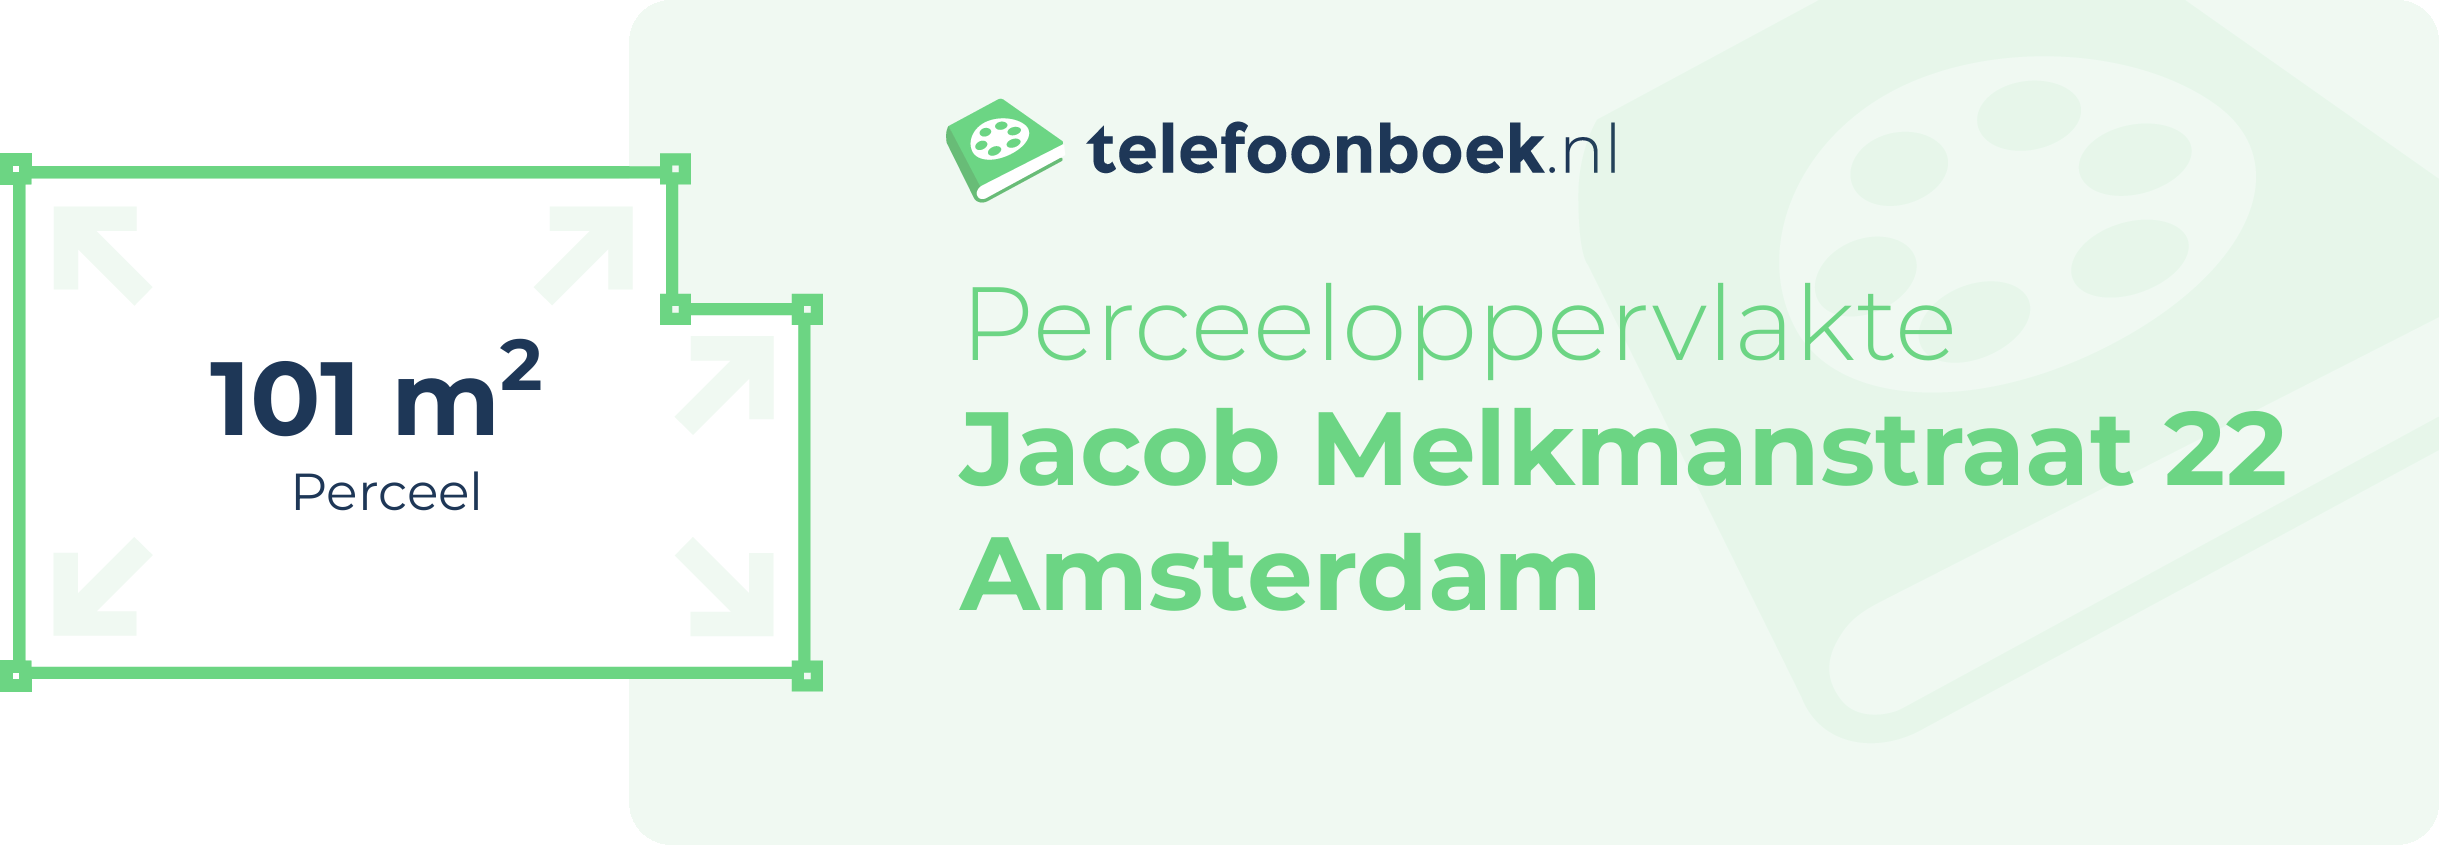 Perceeloppervlakte Jacob Melkmanstraat 22 Amsterdam